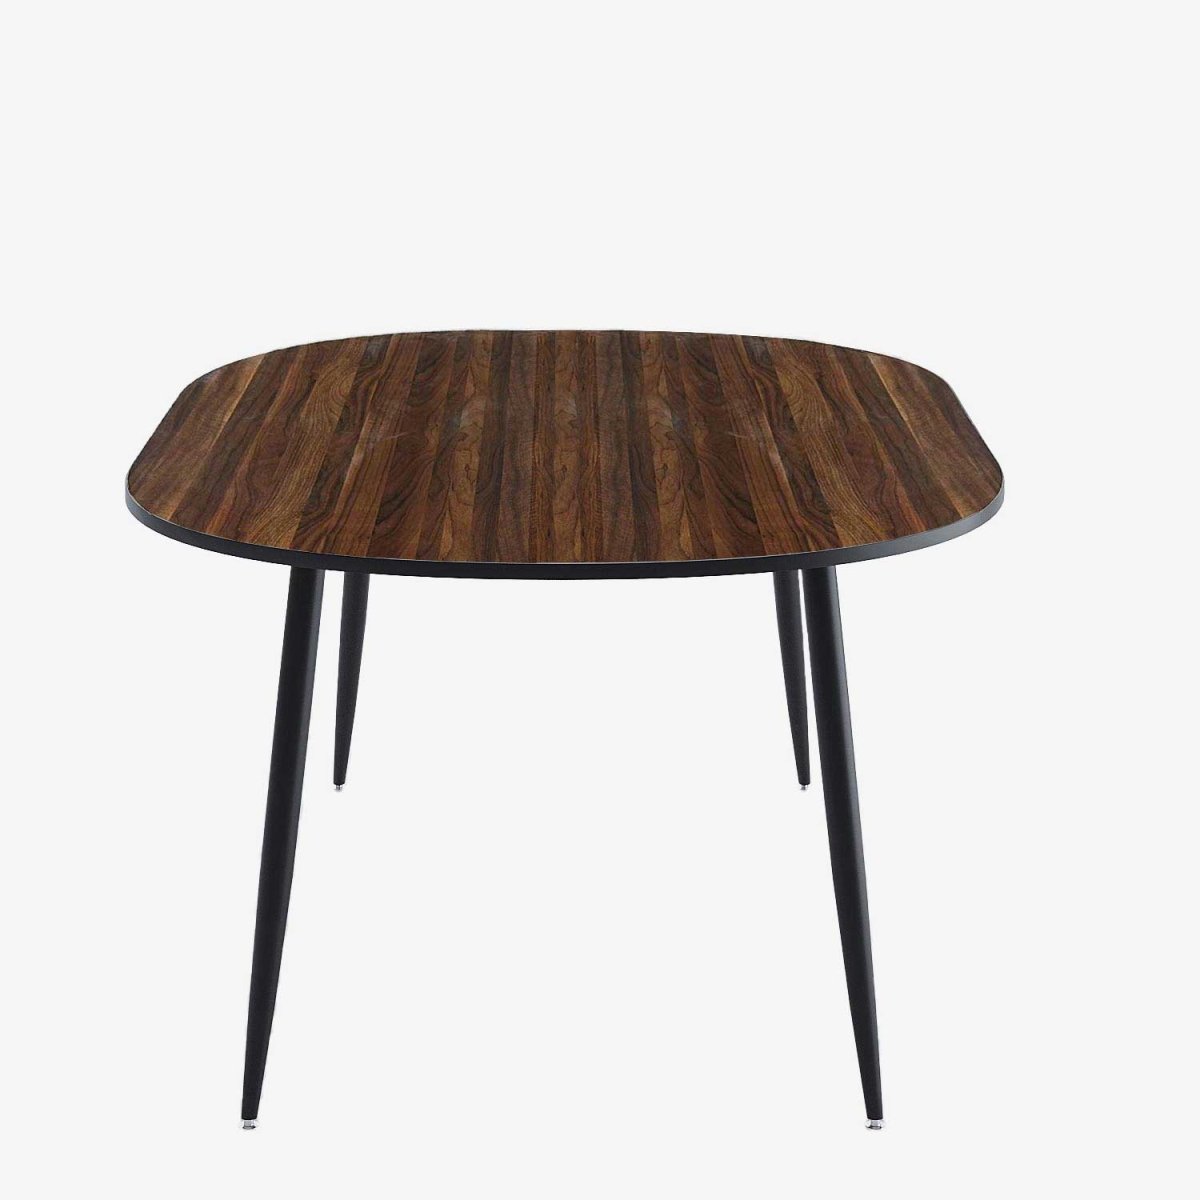 Table à manger 6 personnes de forme ovale design vintage - Potiron Paris, meubles contemporains salle à manger chicris, 